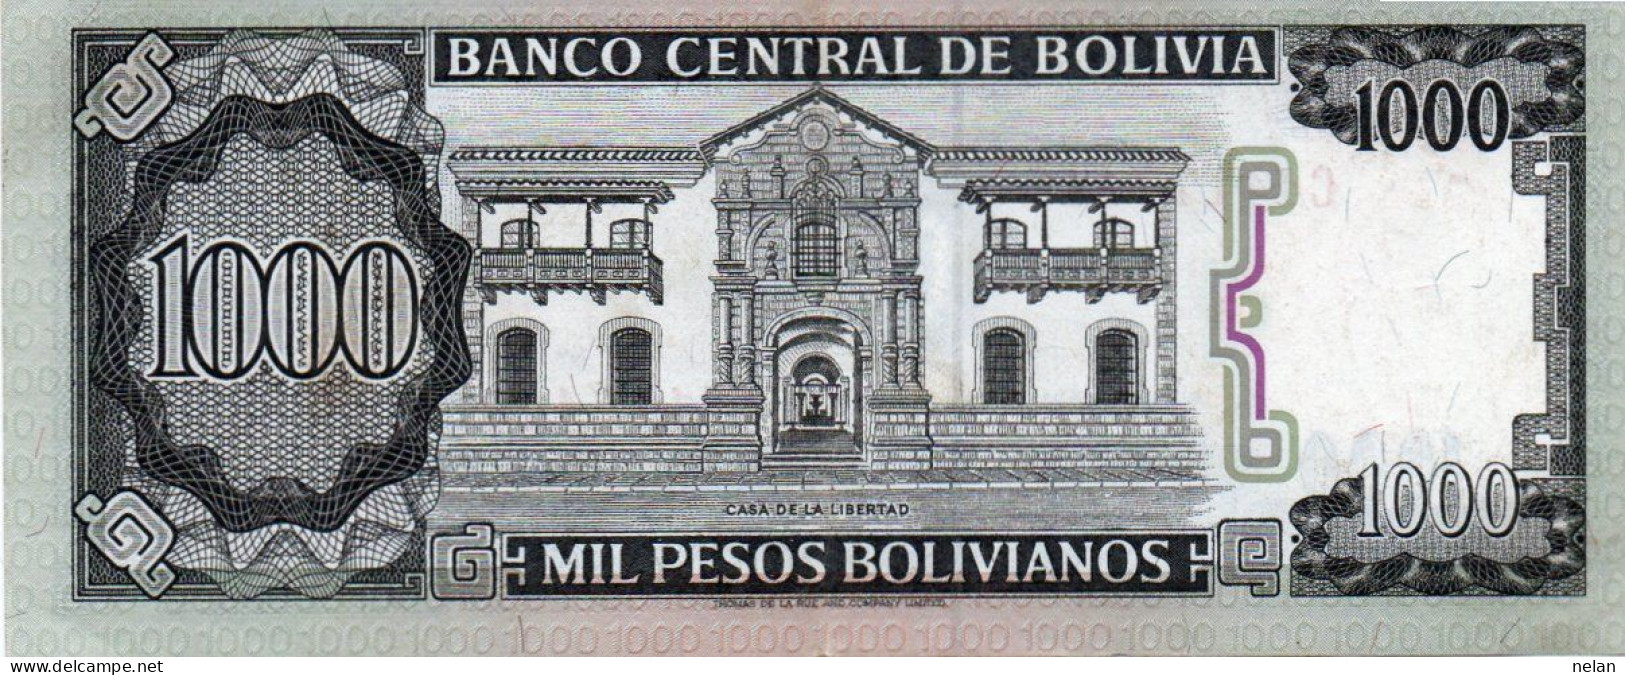 BOLIVIA 1000 BOLIVIANOS 1982 P-167a.3.2 XF++AUNC - Bolivia